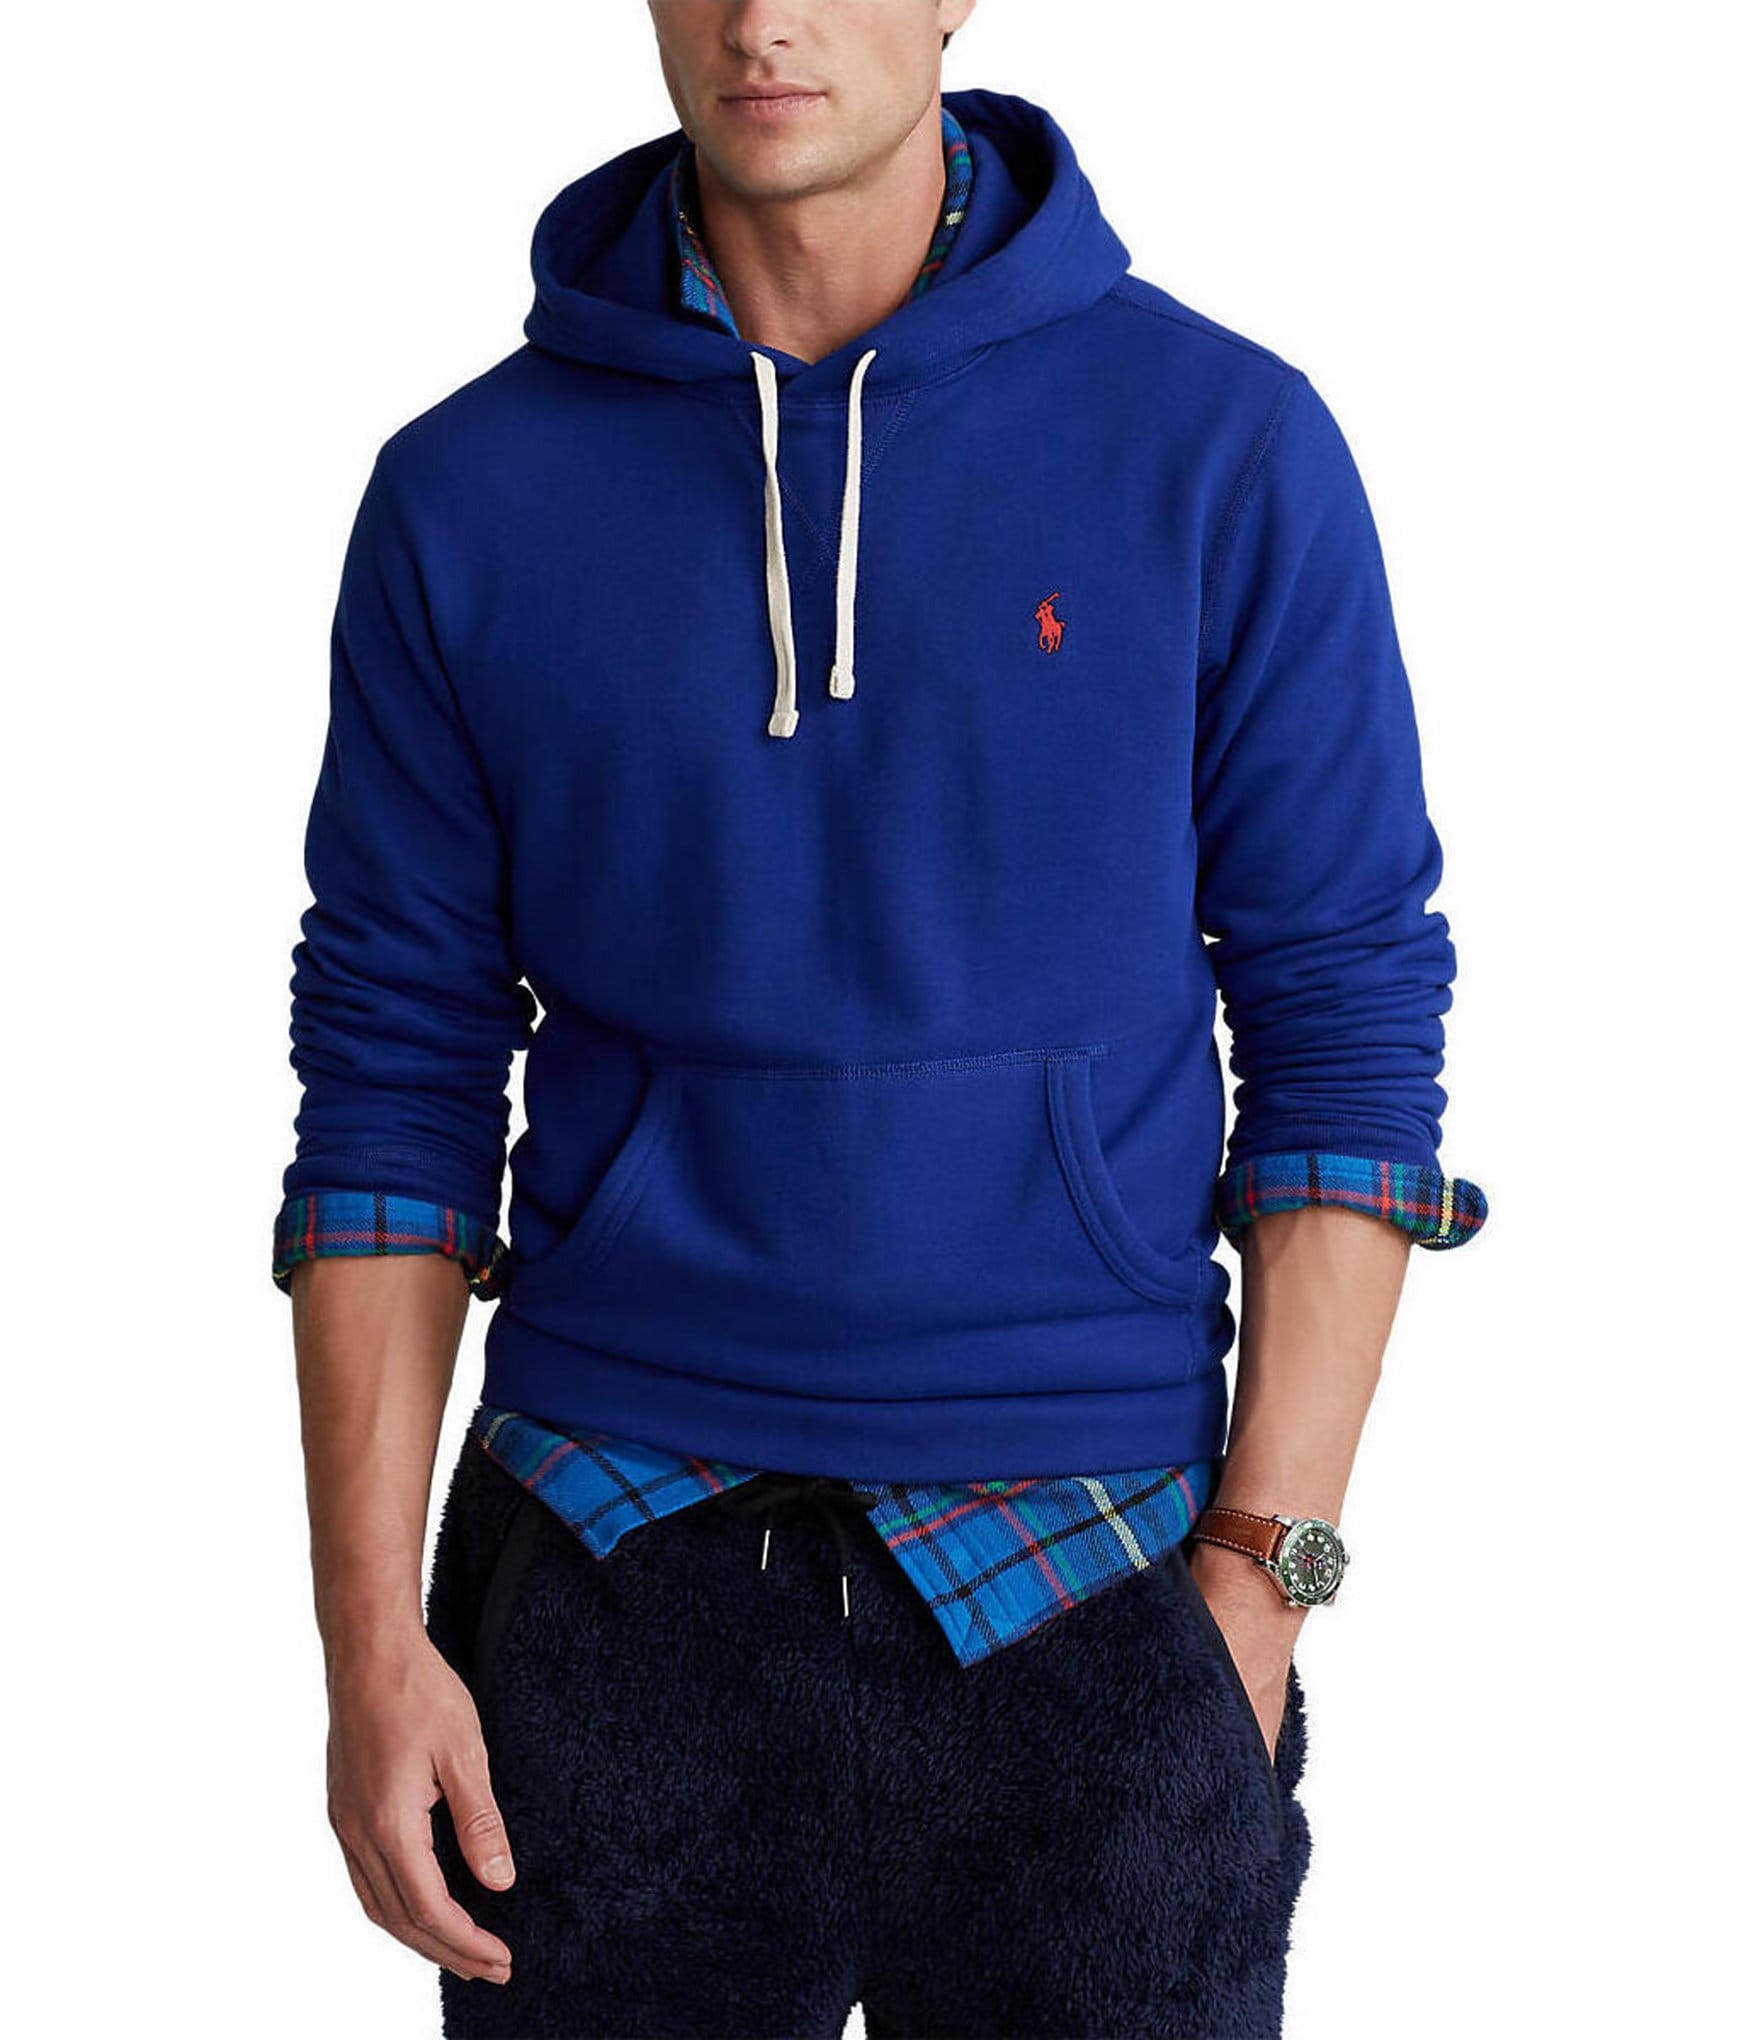 Polo Ralph Lauren Men's Hoodies & Sweatshirts | Dillard's